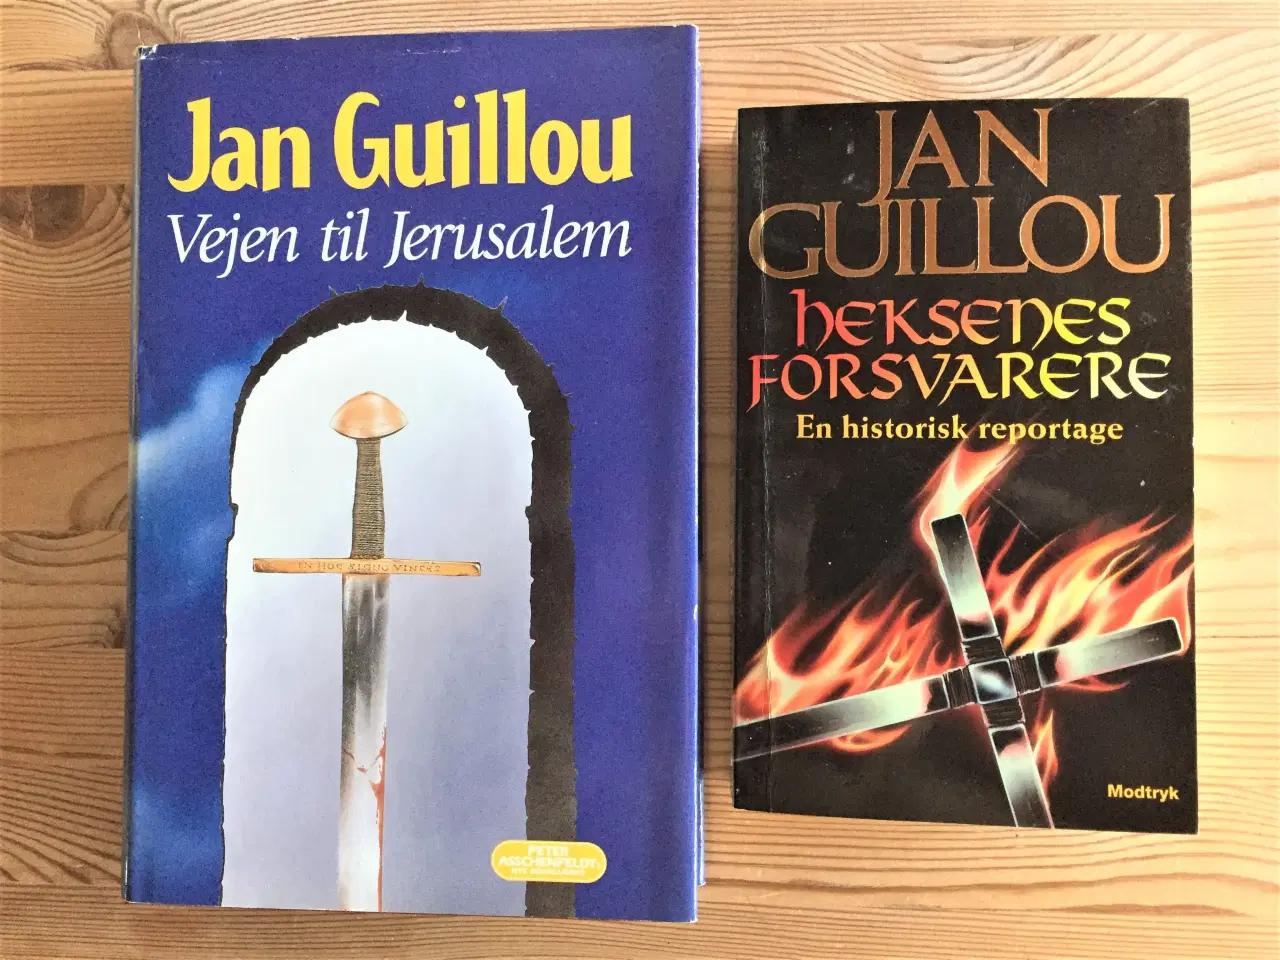 Billede 4 - TILBUD: 17 bøger af Jan Guillou